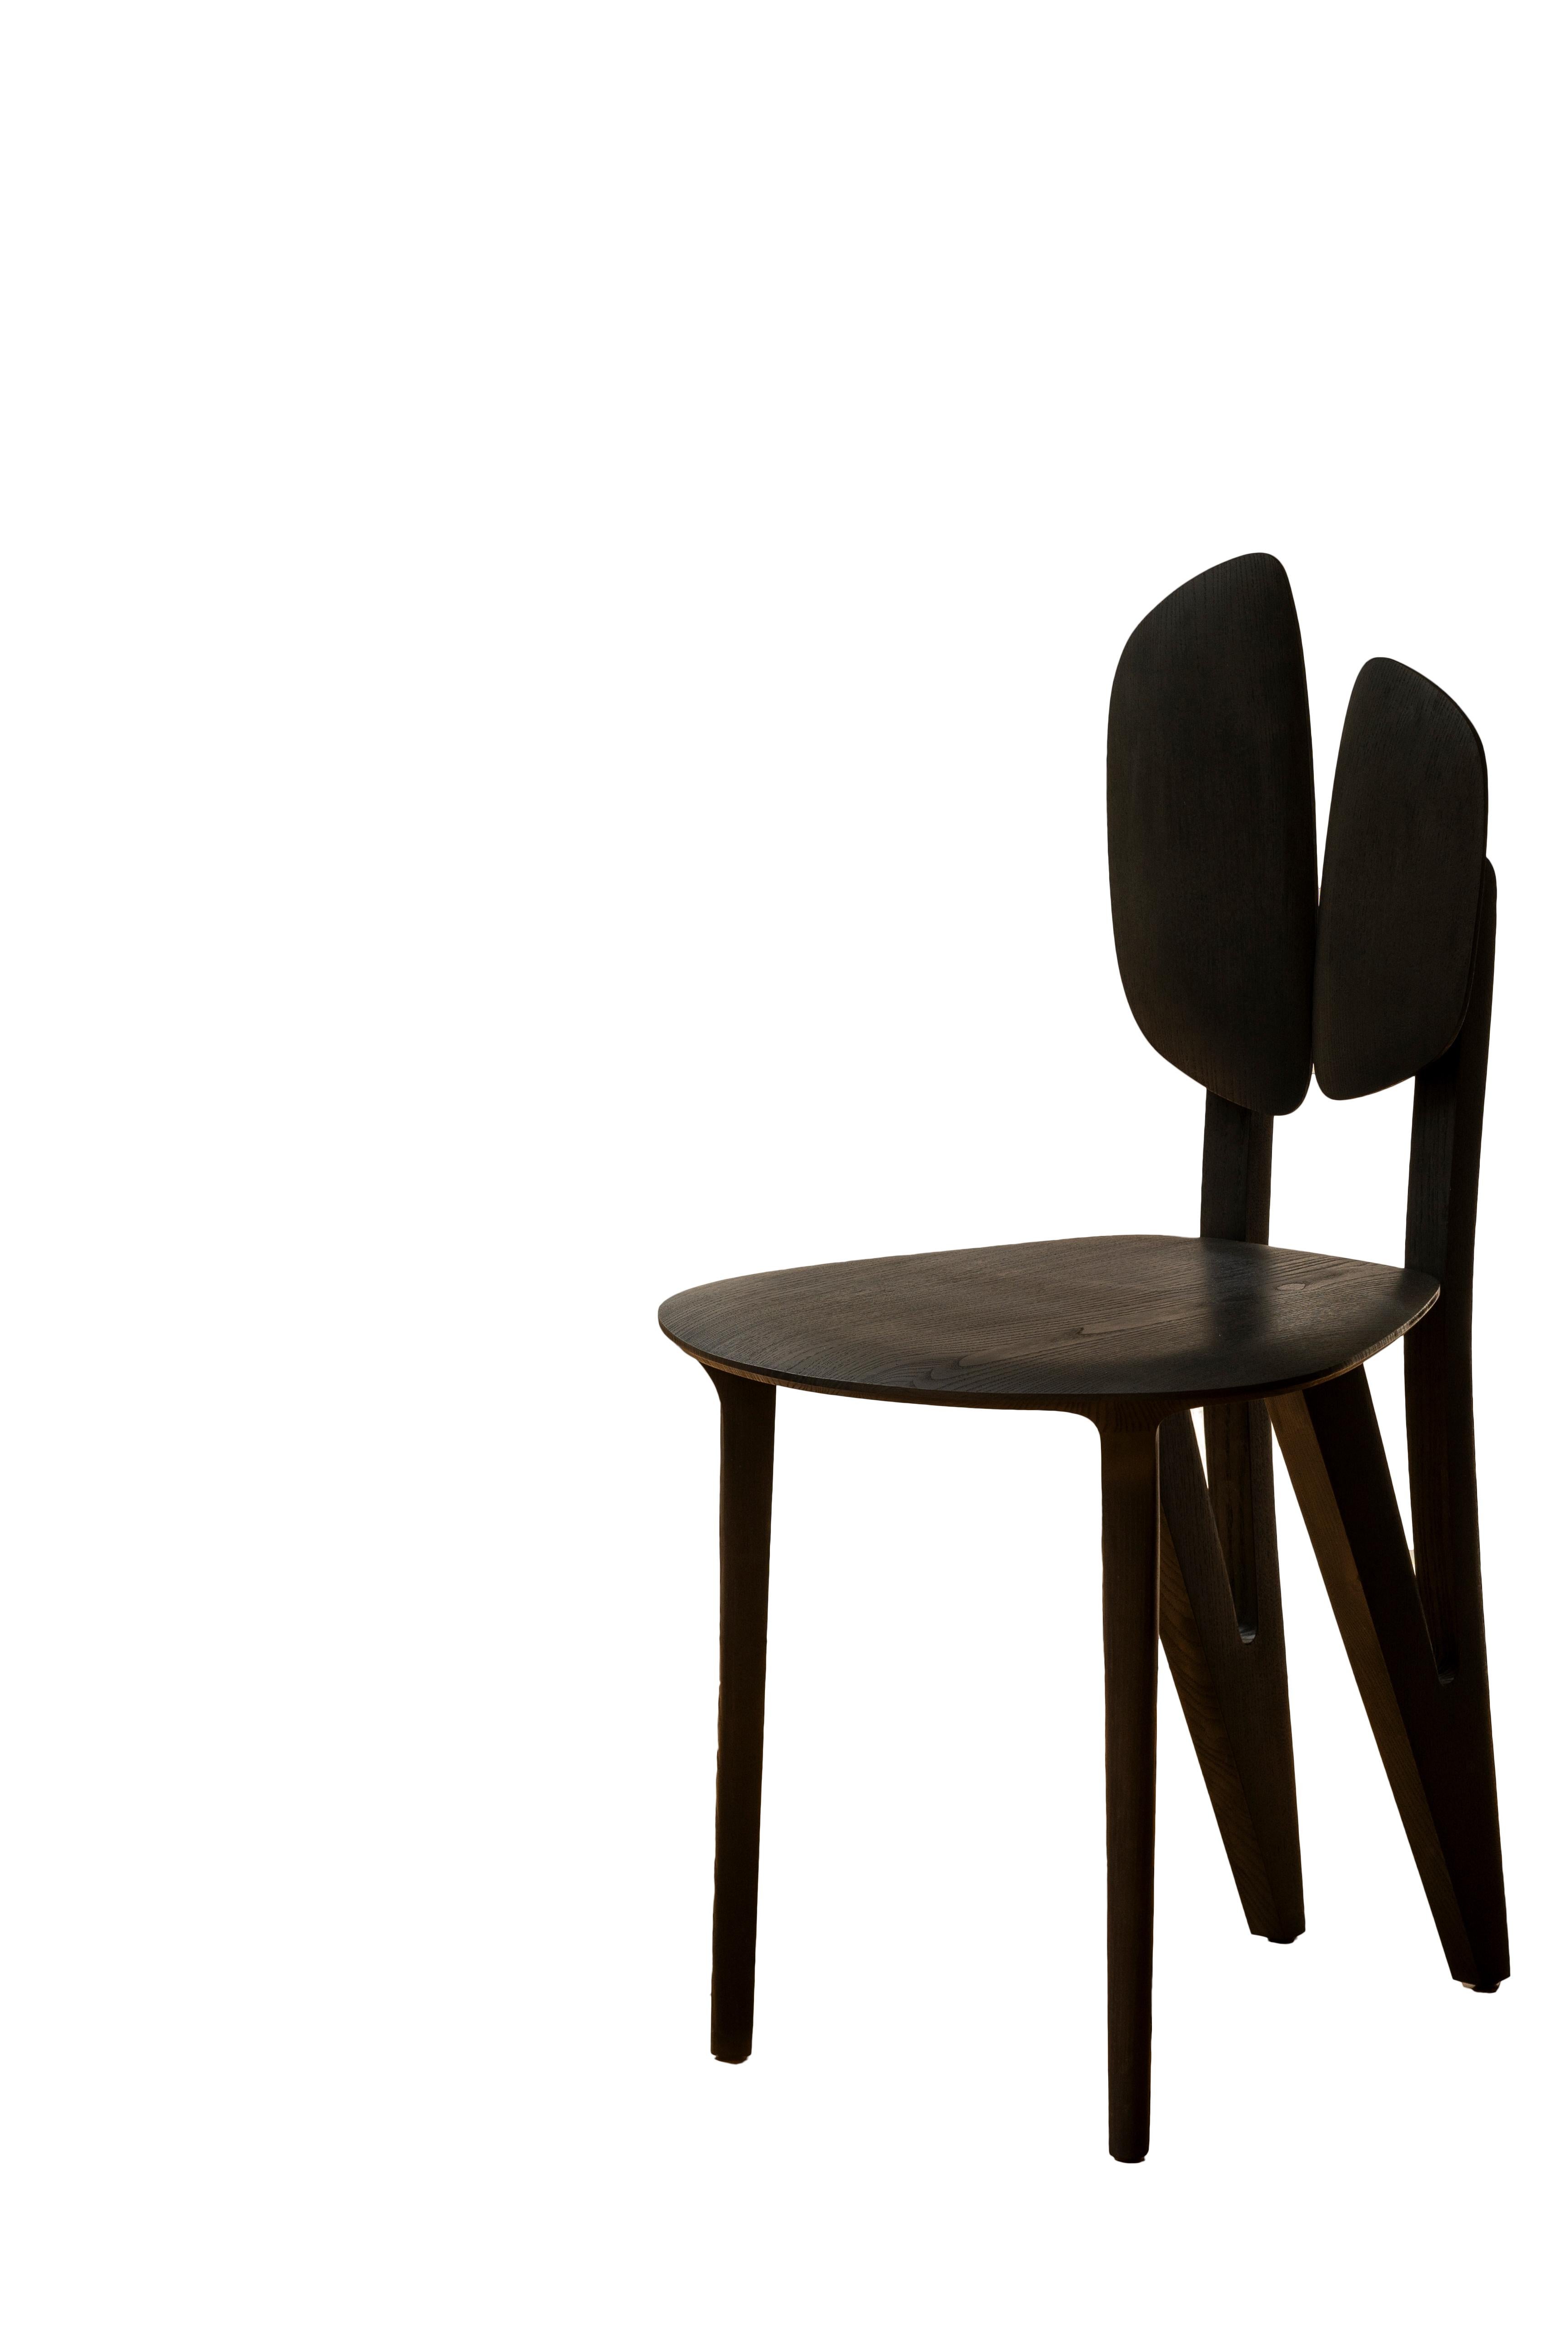 chaise pétiole

Chaise en frêne teinté réalisée par le designer Alexandre Labruyère en 2023. La chaise Petiole fait partie de la collection Petiole inspirée du principe naturel du pétiole, la tige qui attache la feuille à la Branch, et qui ne font